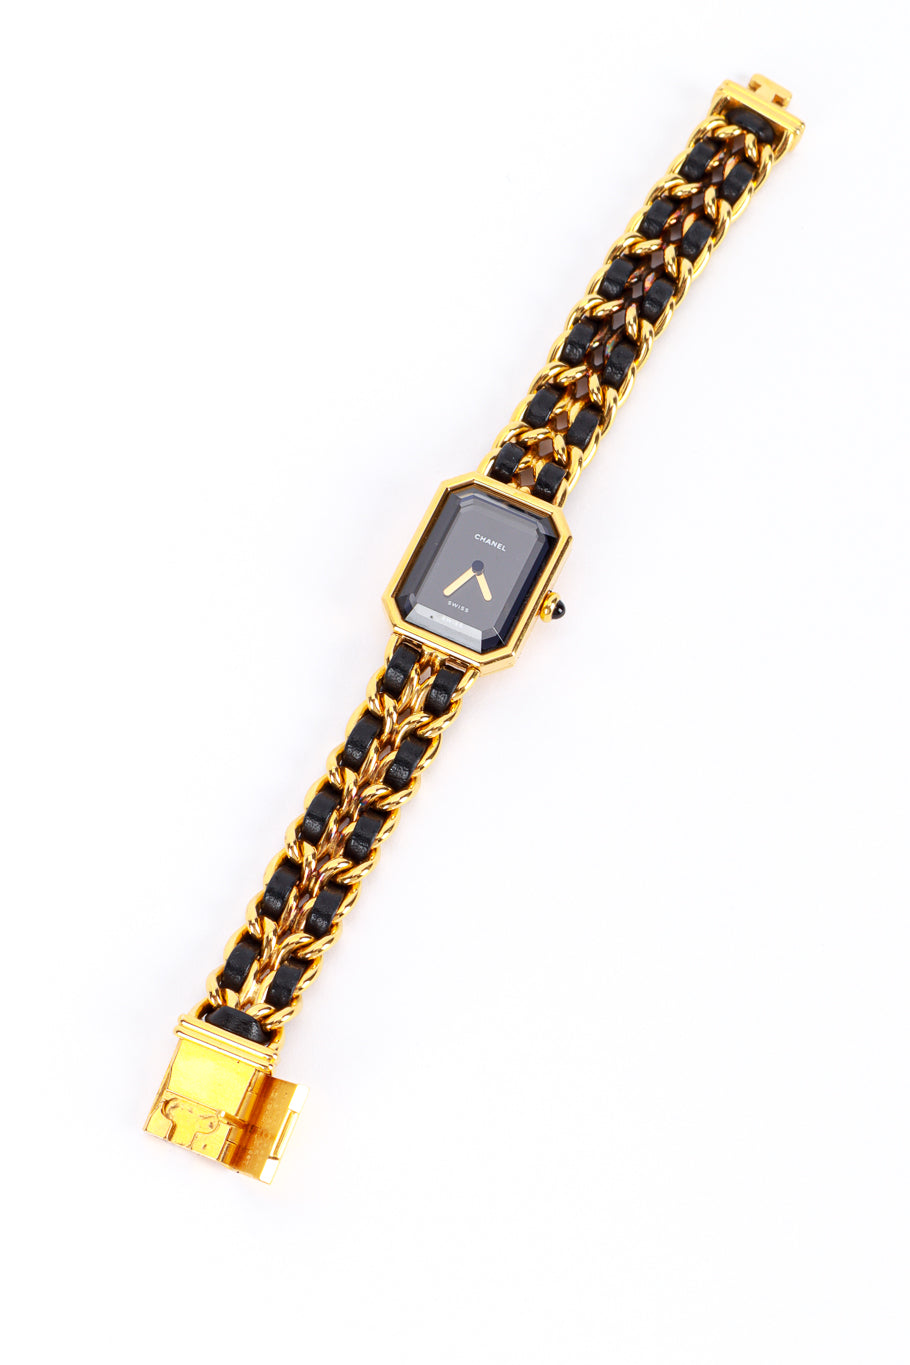 Premier Chain Bracelet Watch by Chanel front flat lay @RECESS LA